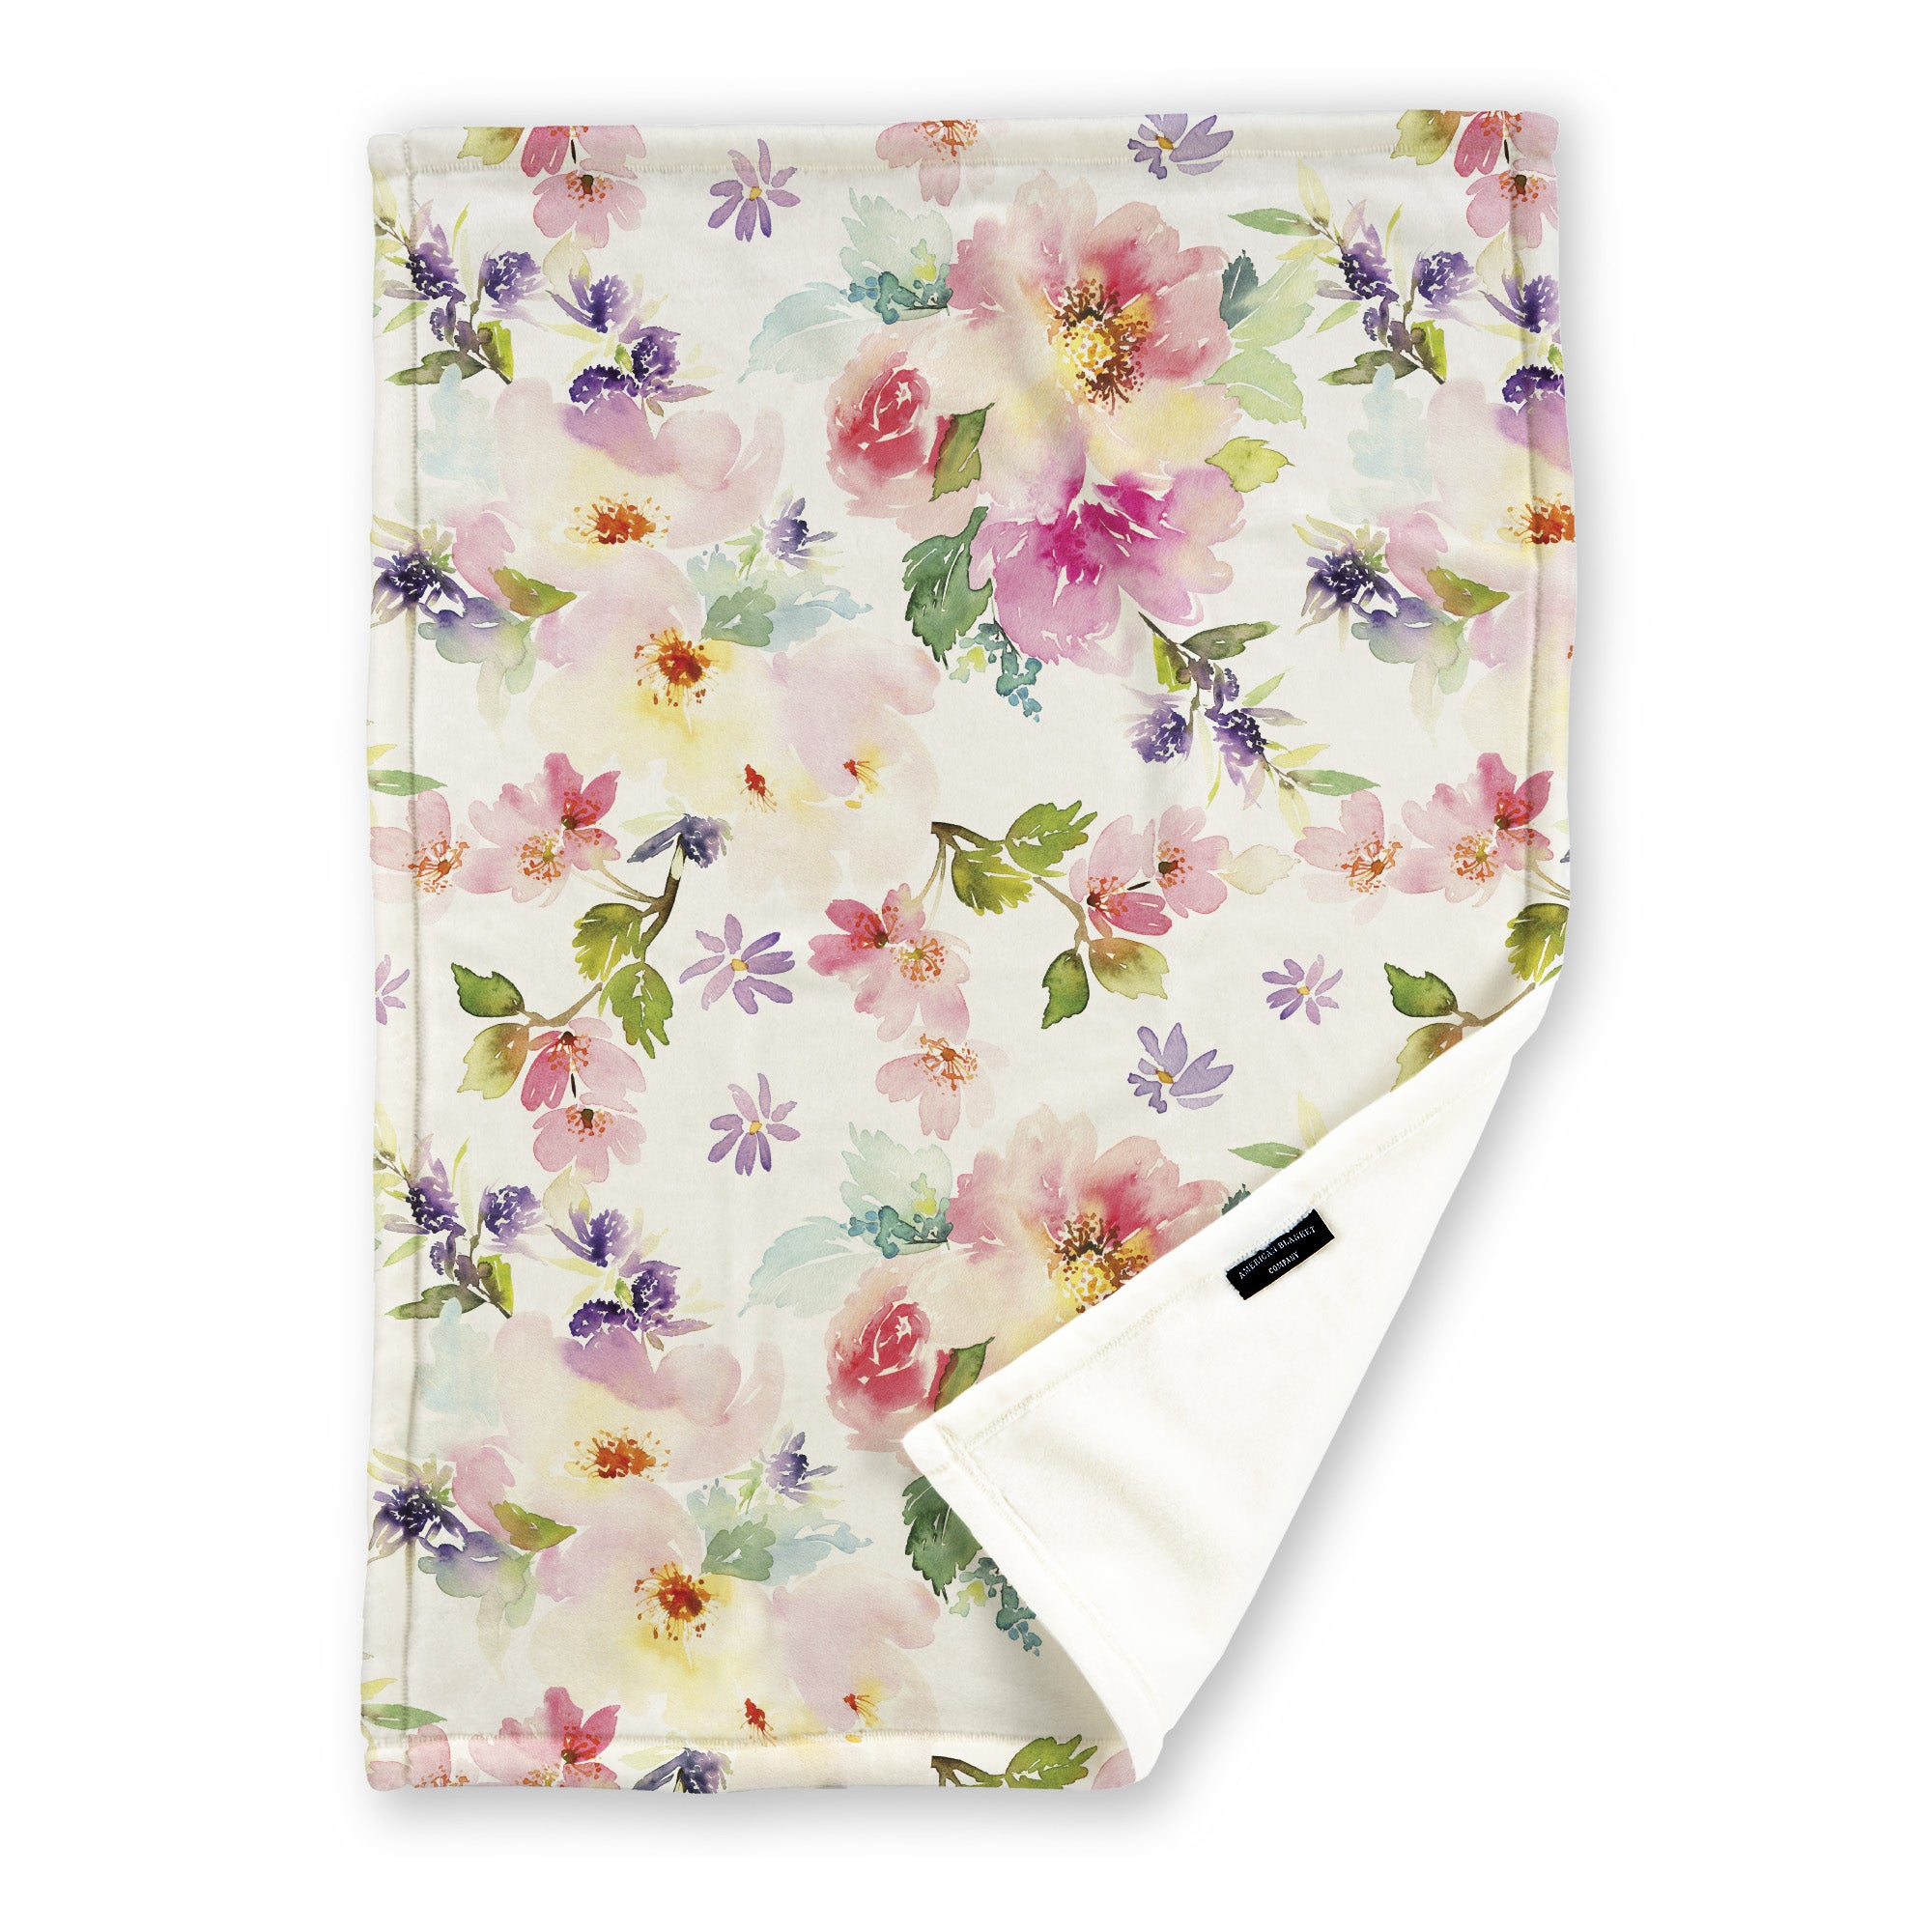 Watercolor Floral Printed Fleece Blanket - Flora Printed Throws | Floral Blanket Patterns - American Blanket Company